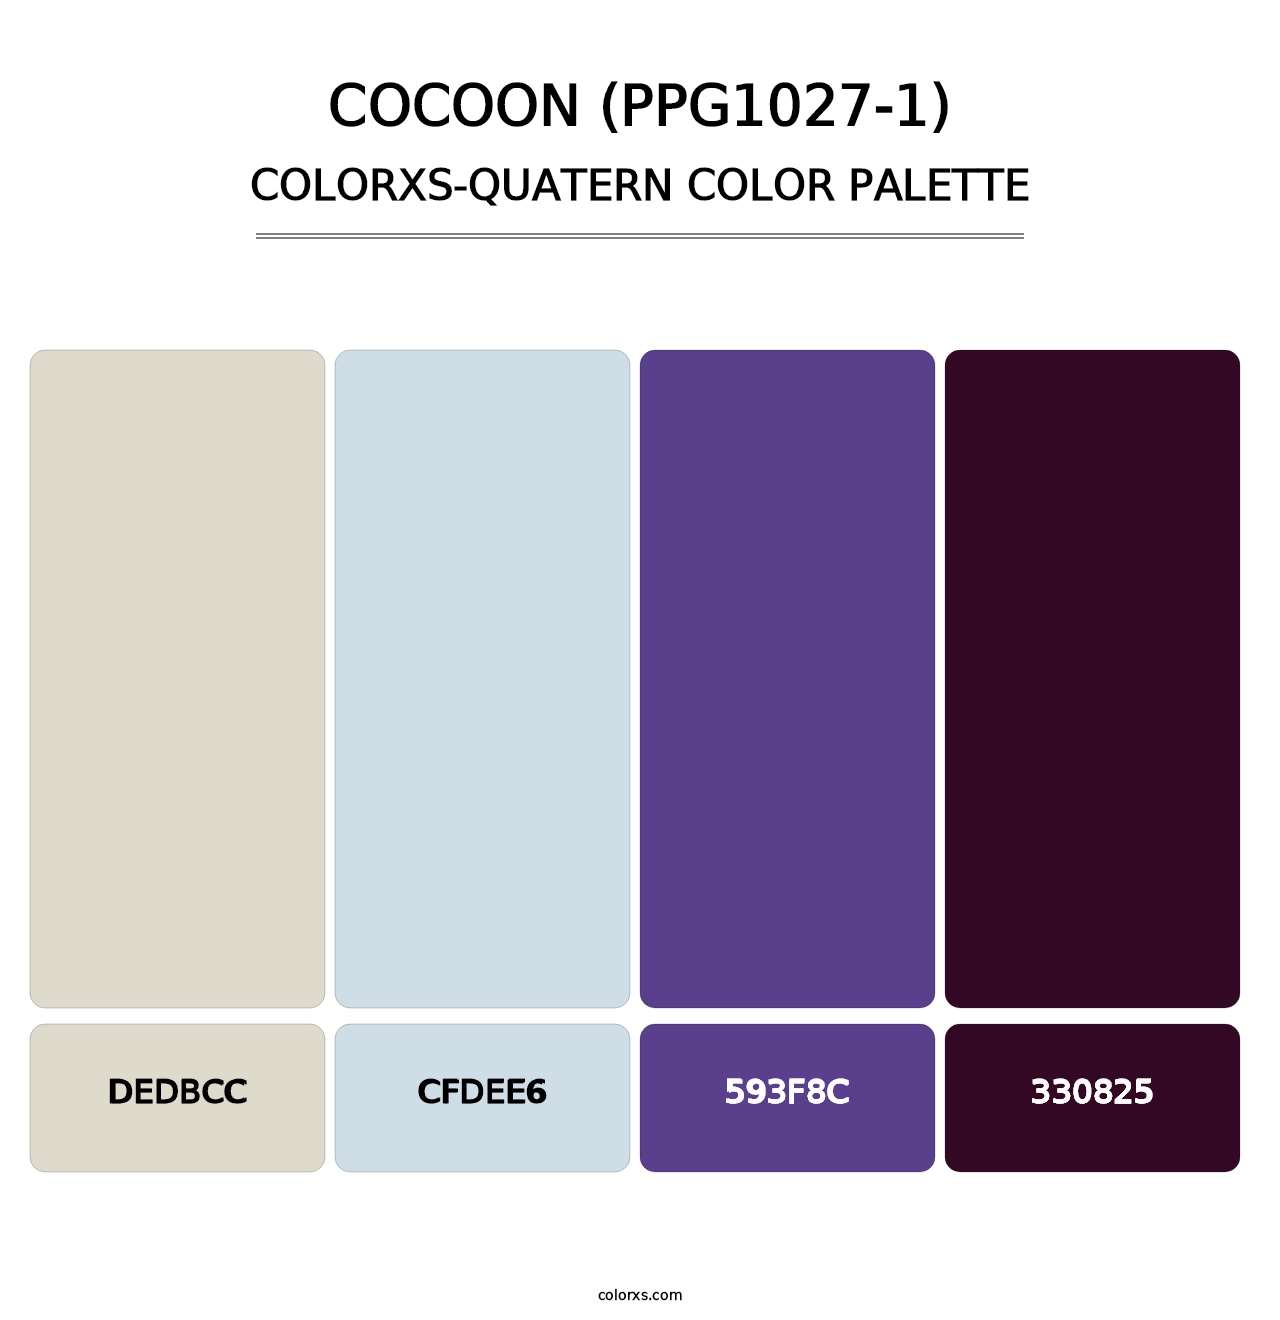 Cocoon (PPG1027-1) - Colorxs Quatern Palette